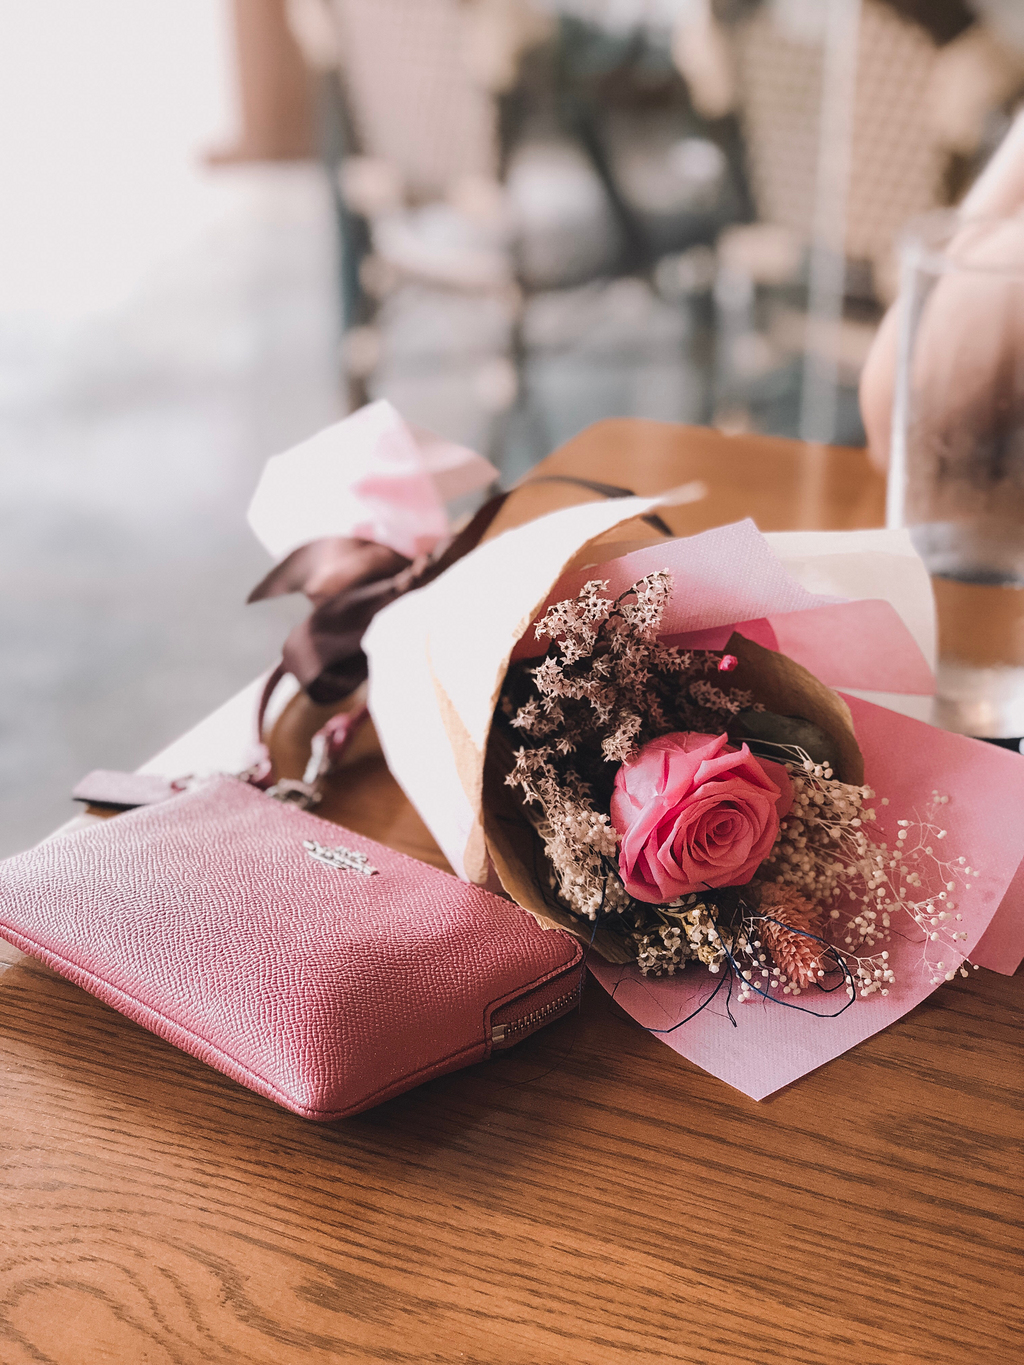 粉红色的玫瑰花附近的粉红色教练皮革钱包在棕色木桌